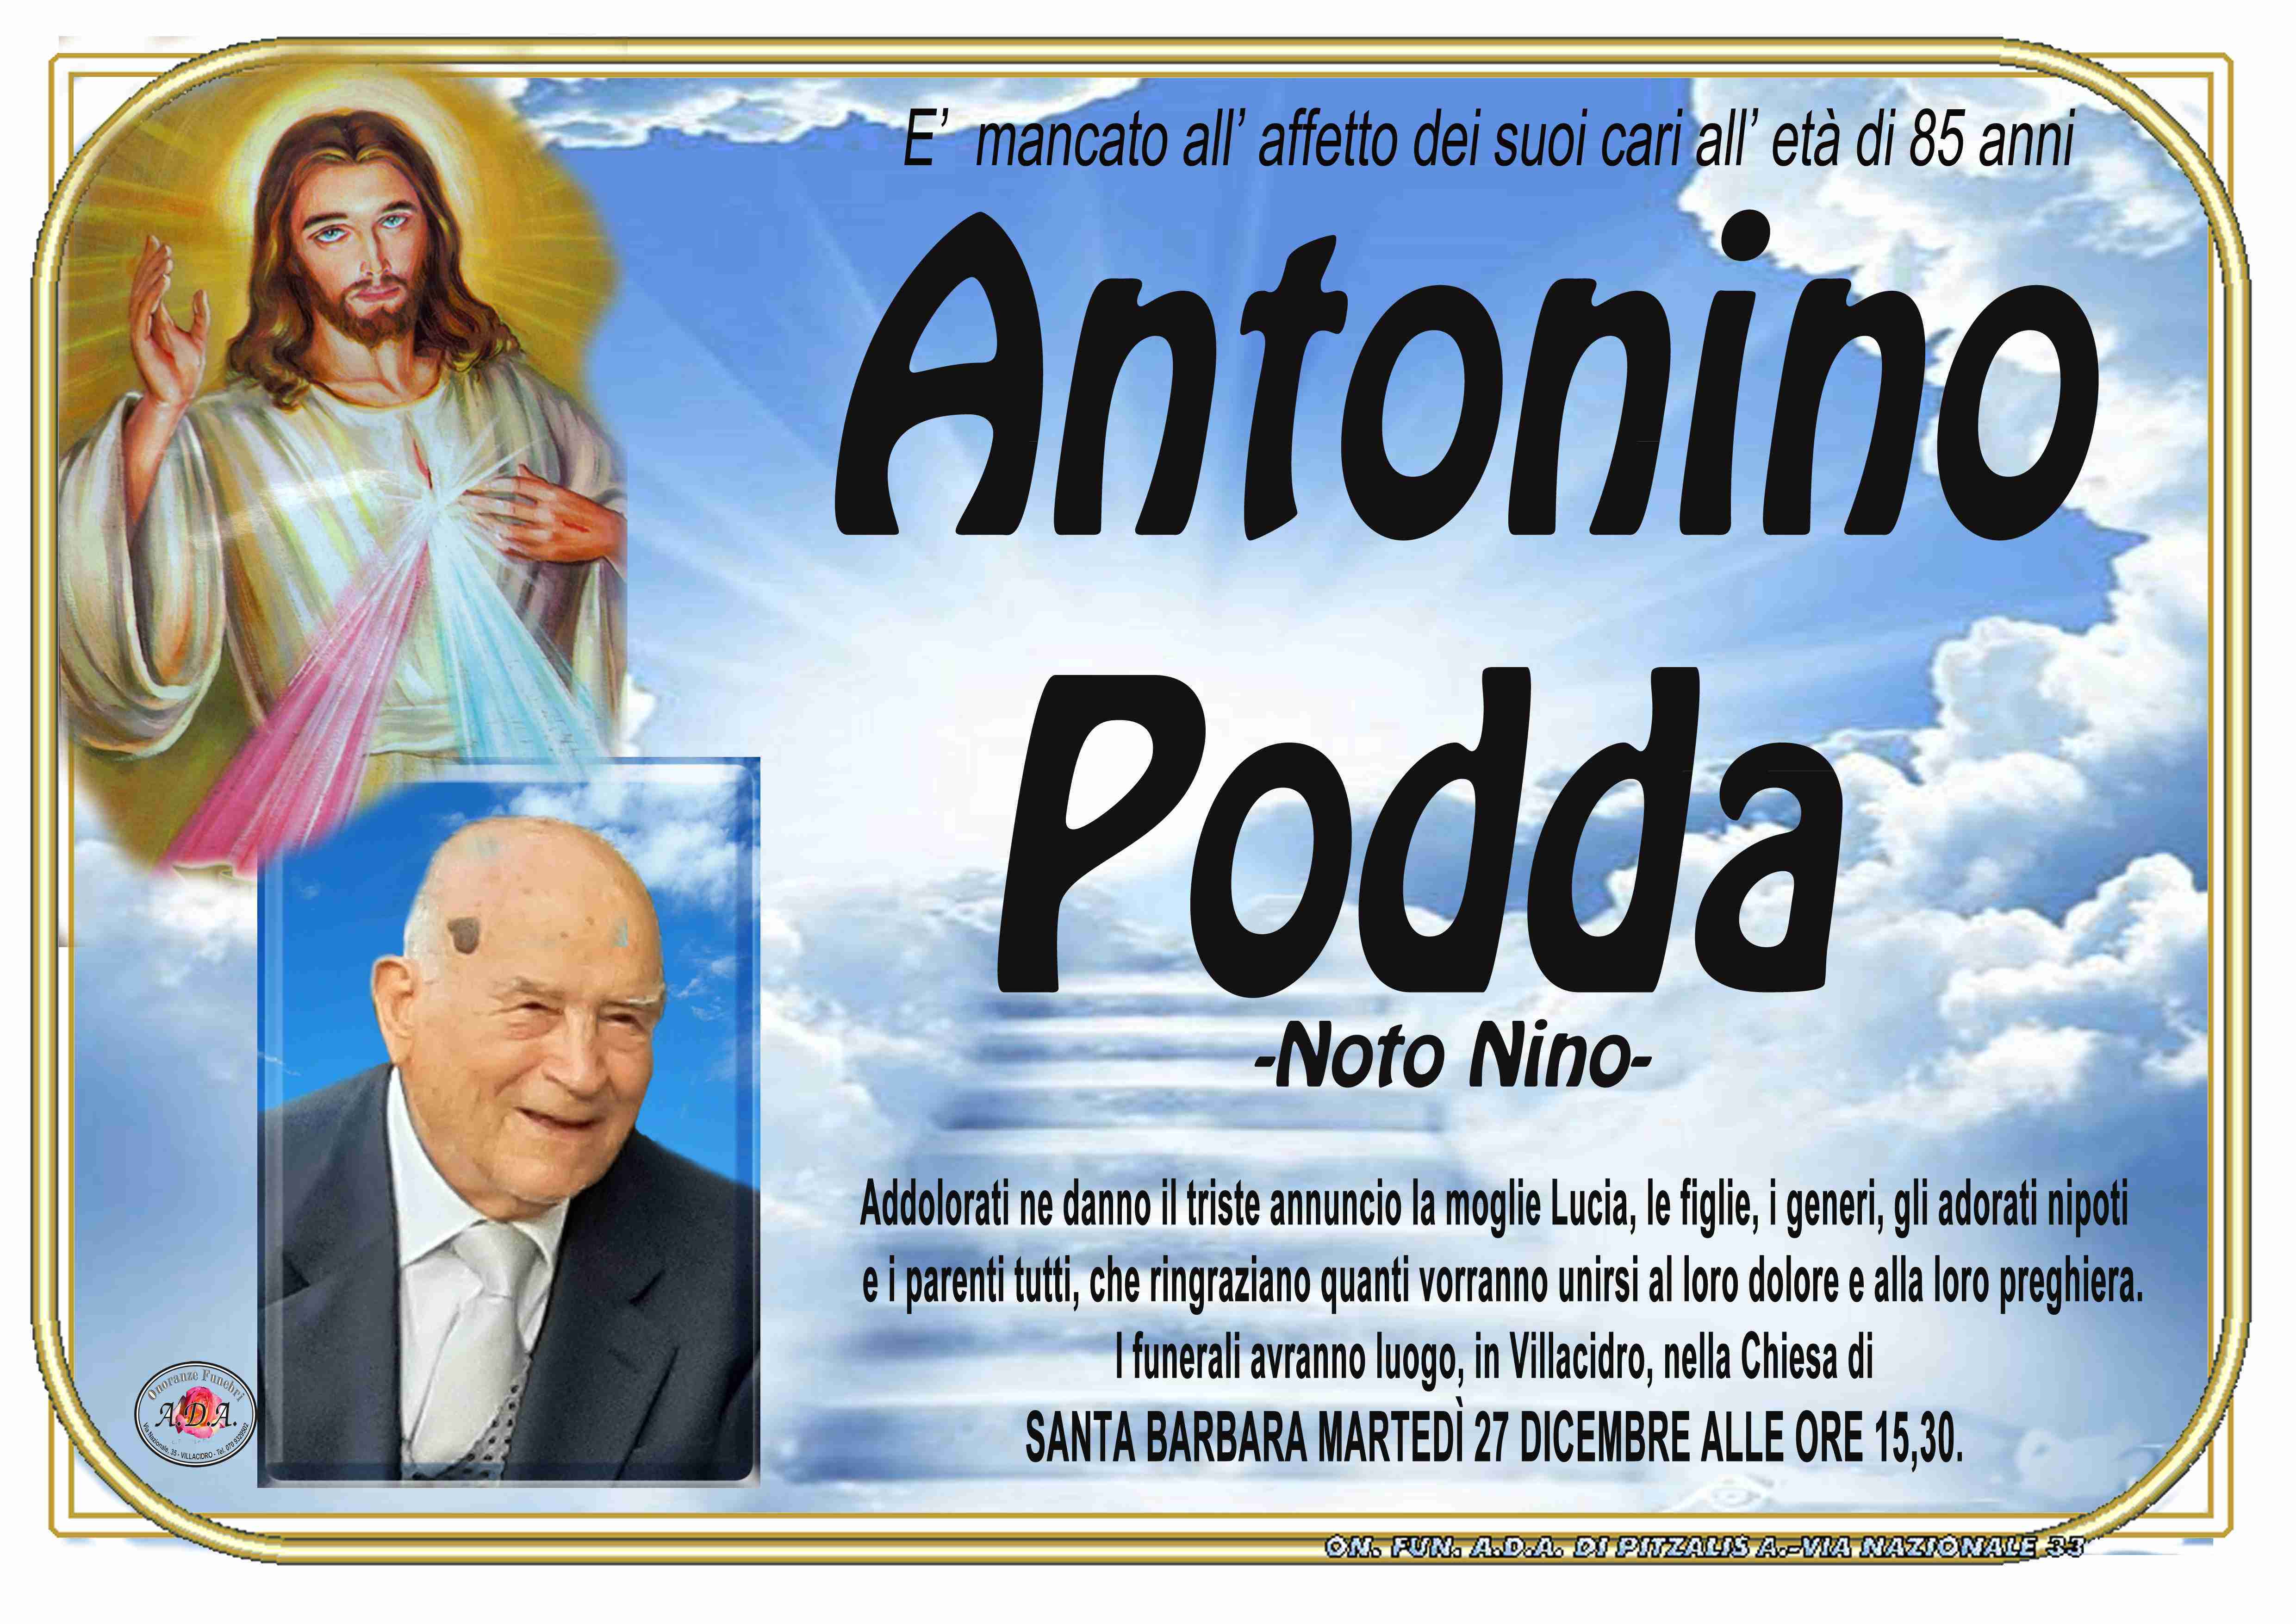 Antonino Podda